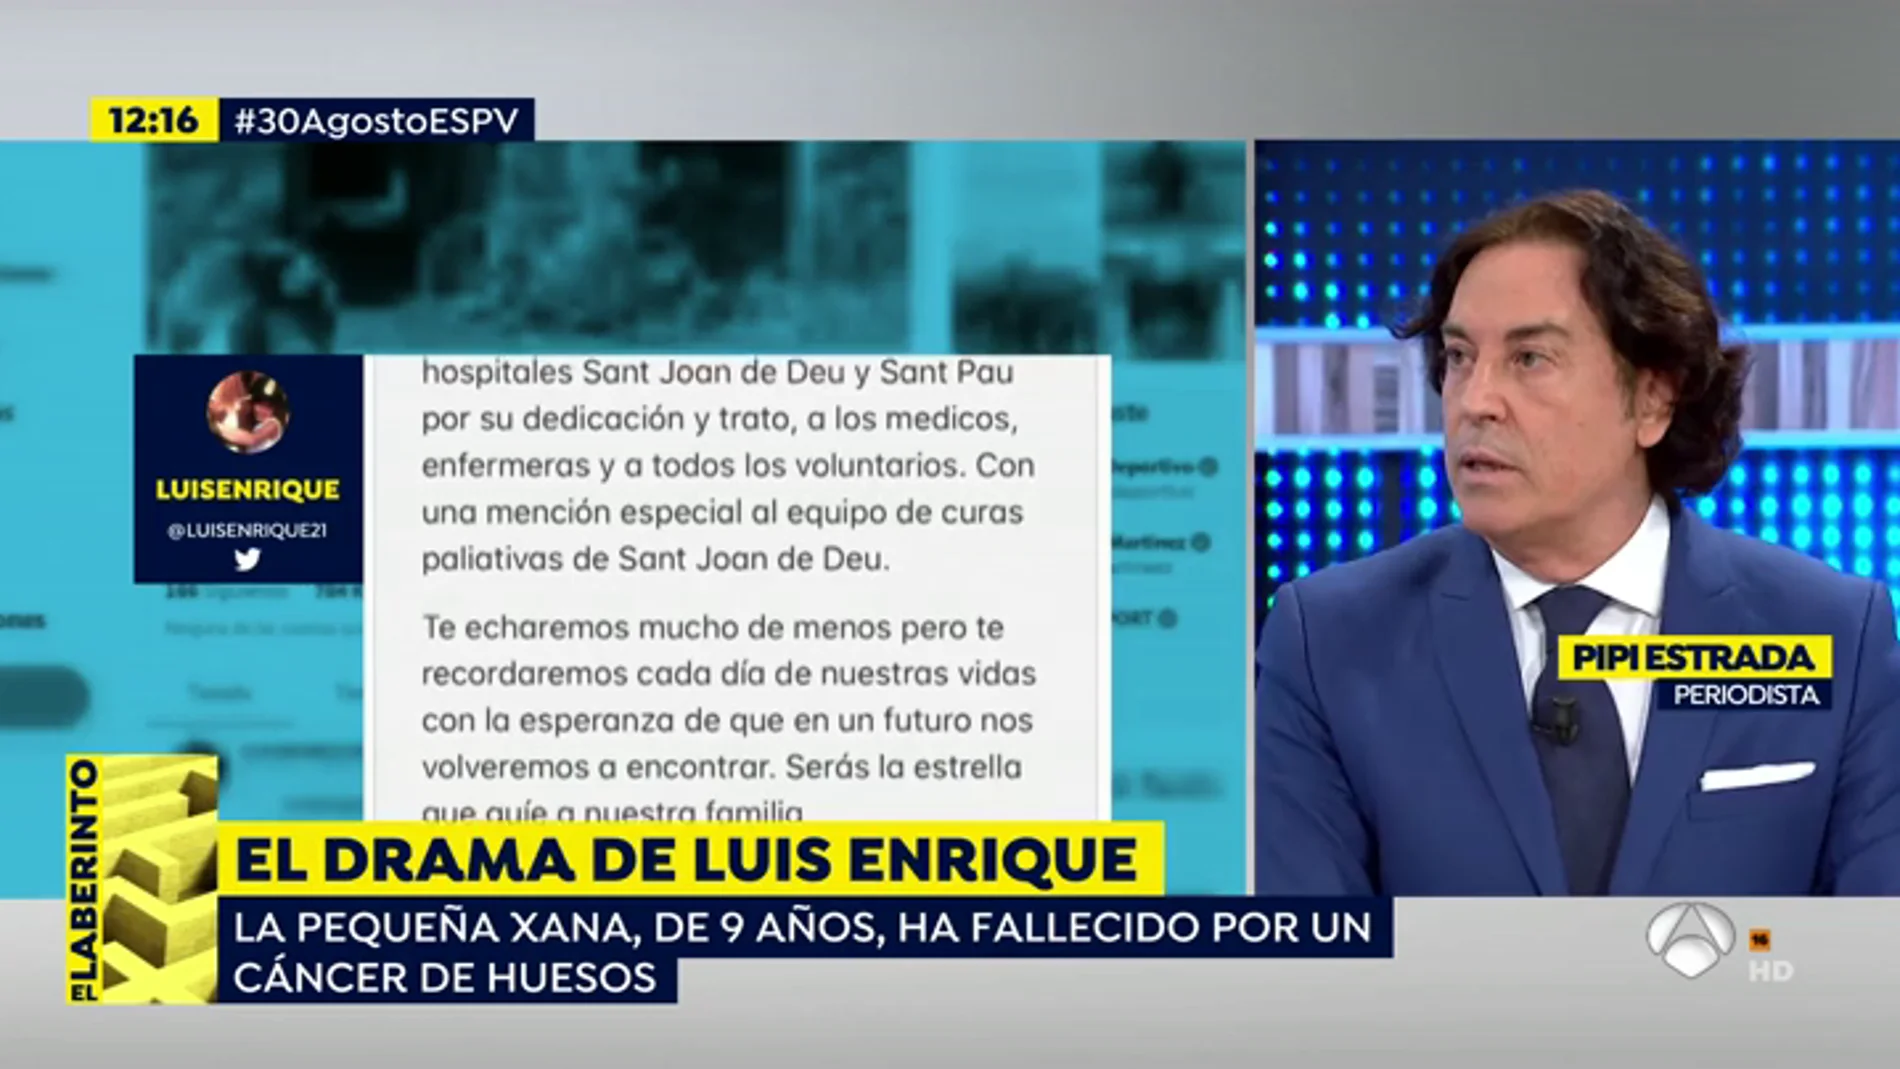 Pipi Estrada sobre el drama de Luis Enrique